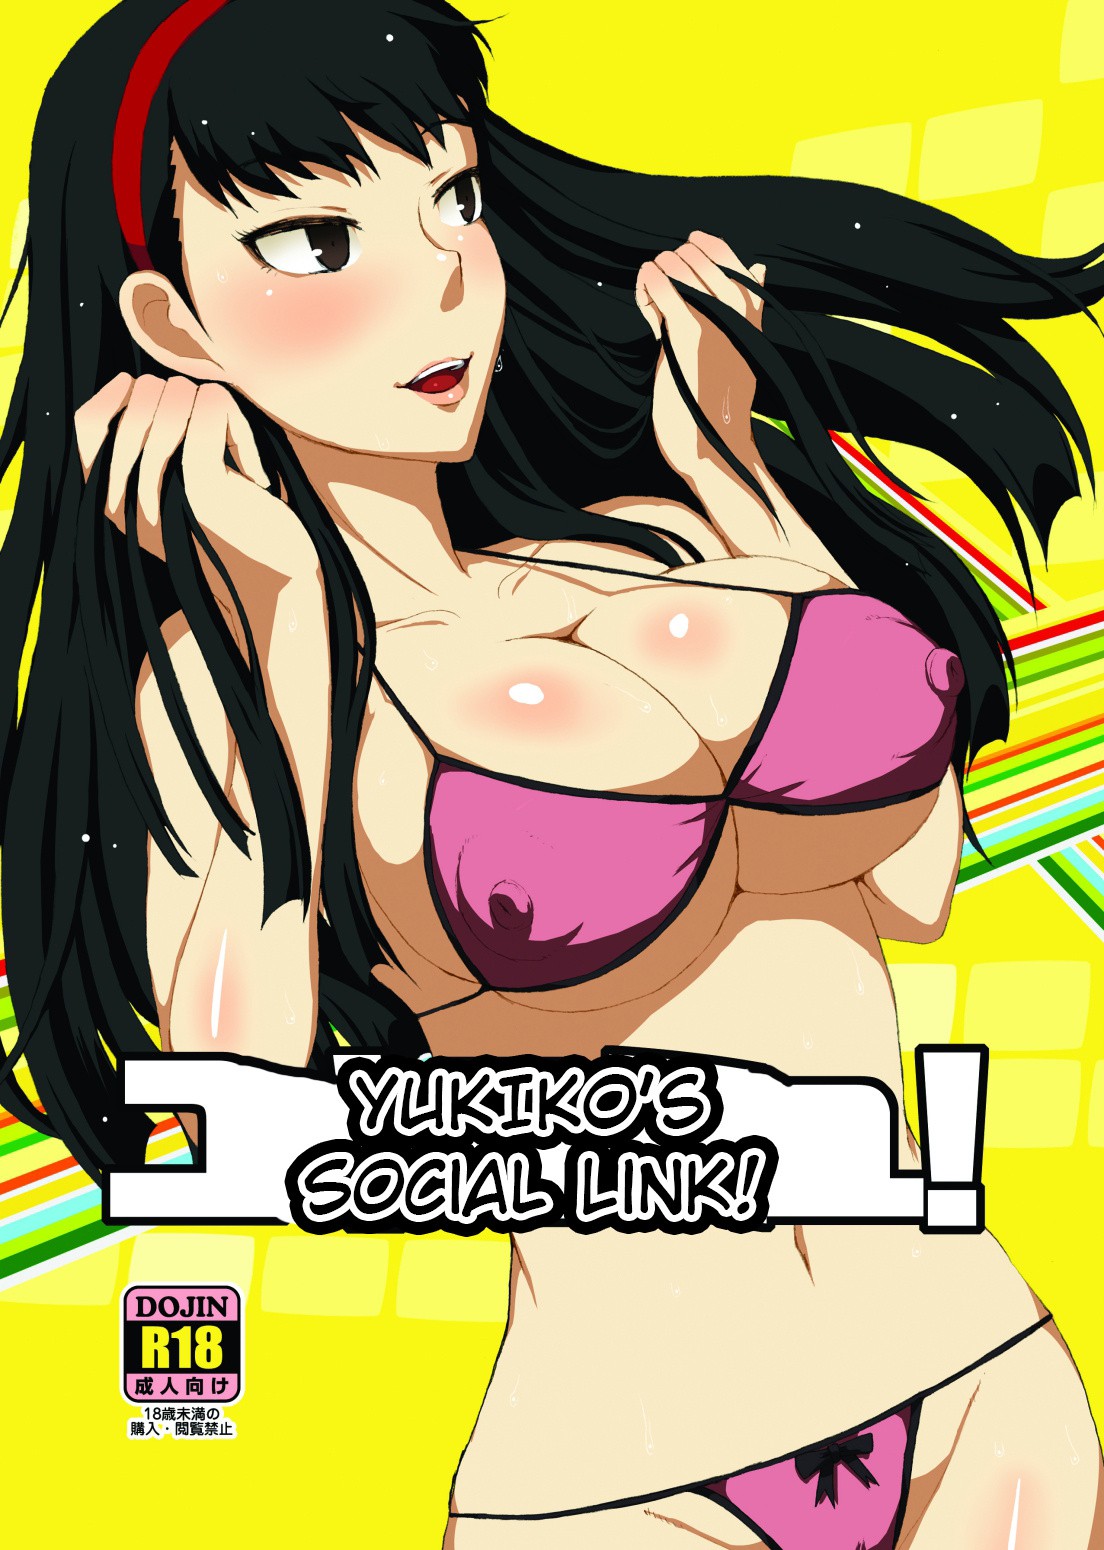 Yukiko's Social Link! hentai manga picture 1